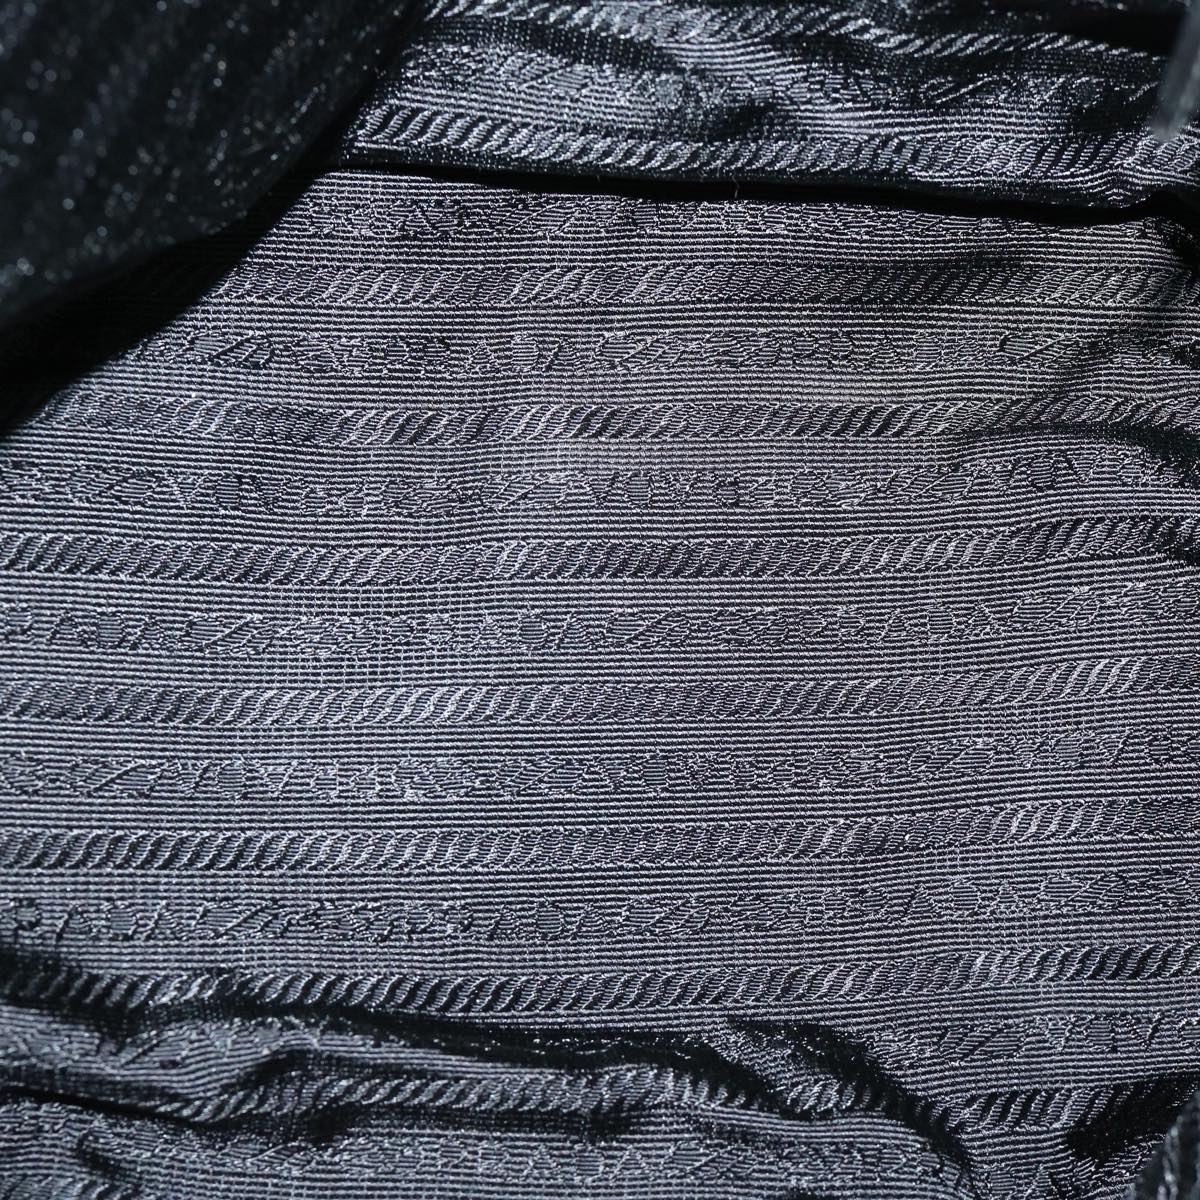 PRADA Chain Shoulder Bag Nylon Khaki Auth 66500